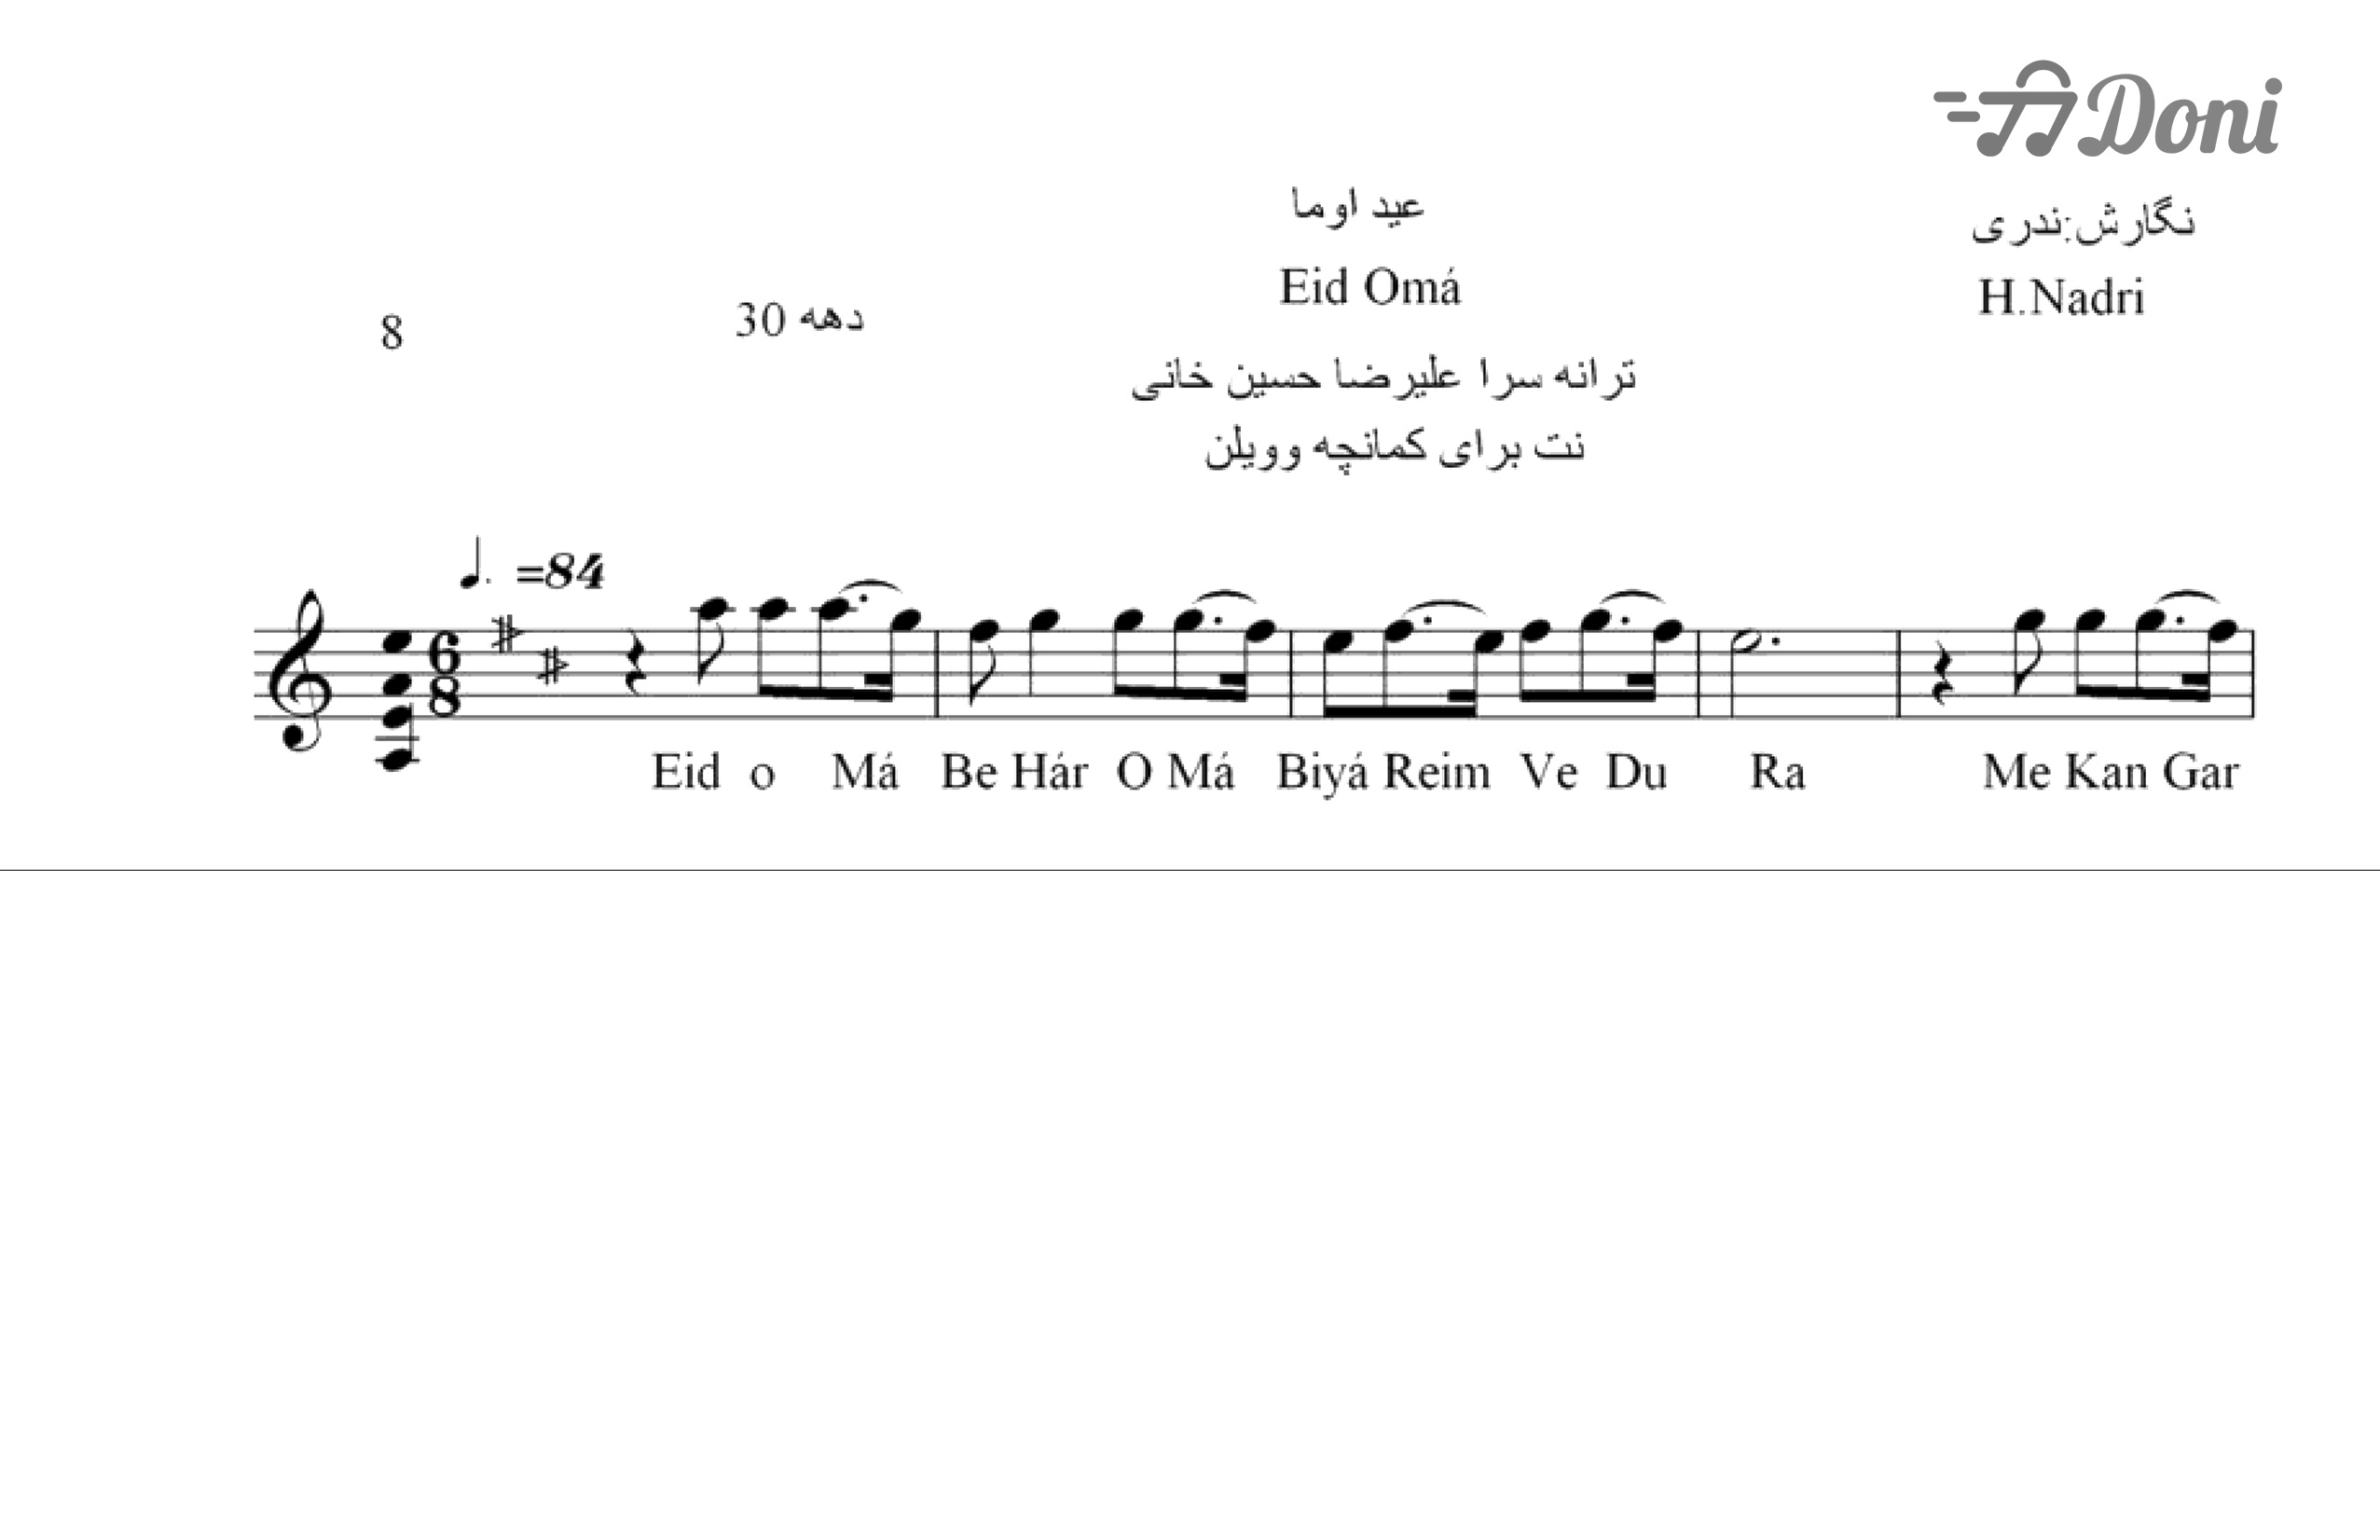 نت ترانه محلی عید اوما محلی لری حجت اله ندری برای اجرا با کمانچه و دیگر سازها